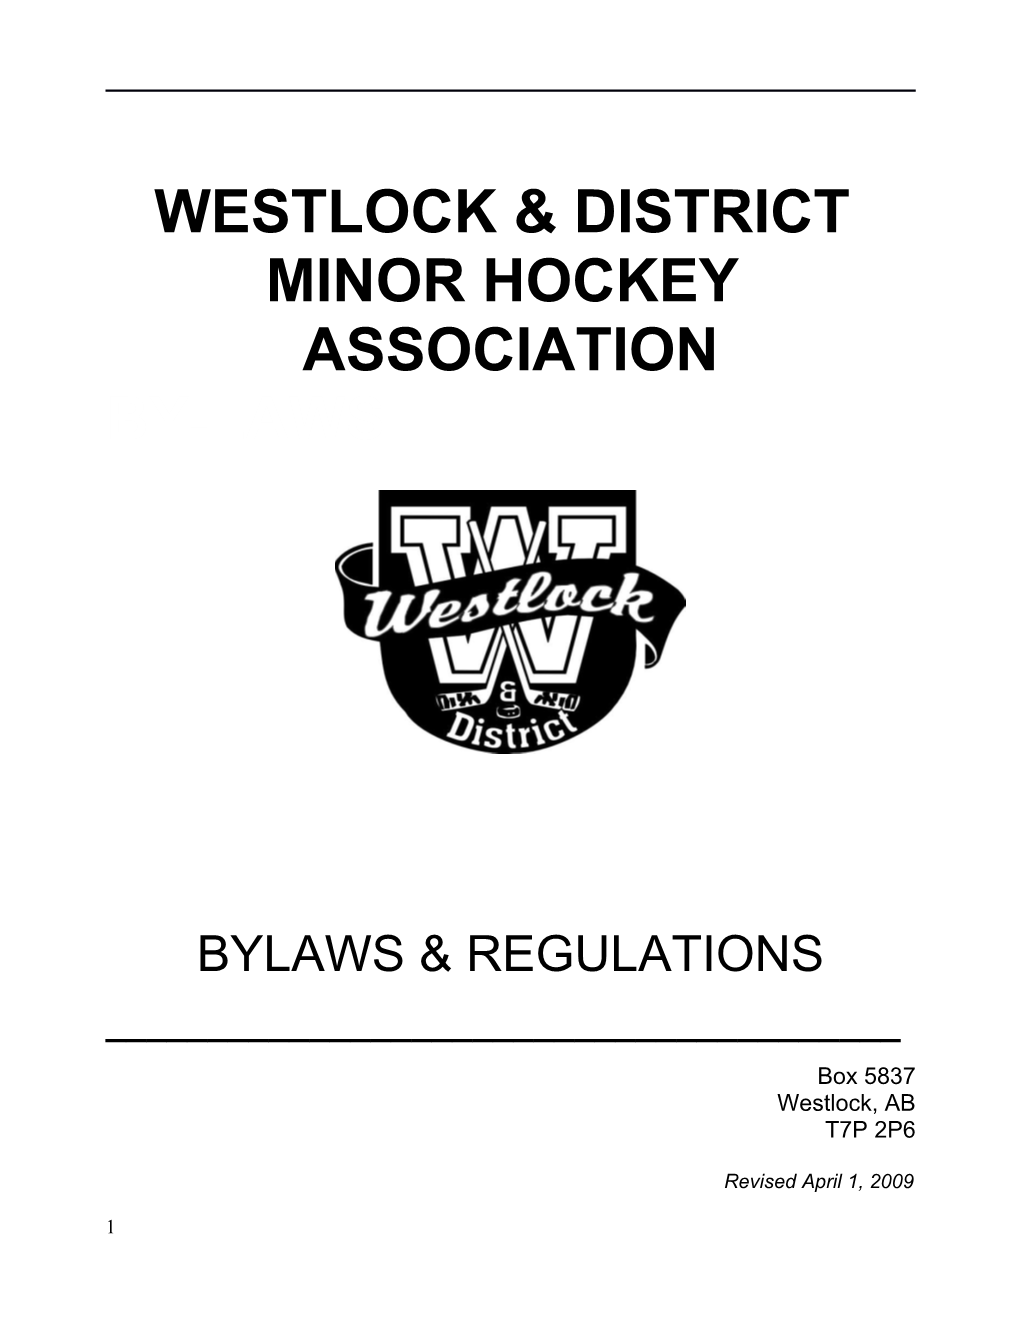 Westlock & District